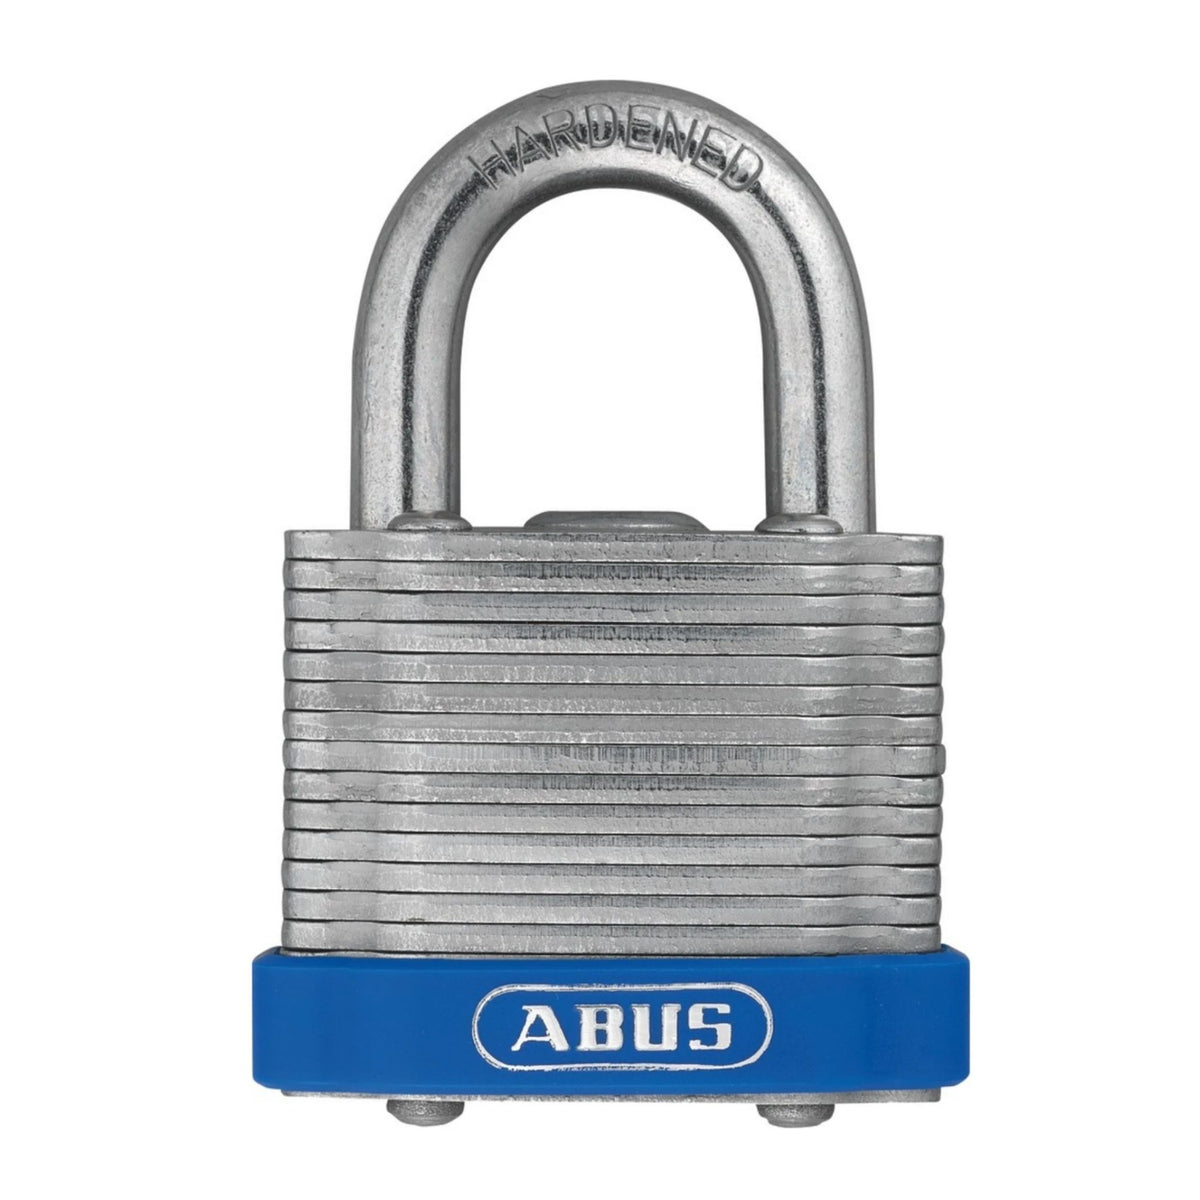 Abus 41/40 Blue Lock Laminated Steel Padlocks Keyed Alike (4140 KA), KD or MK Locks - The Lock Source